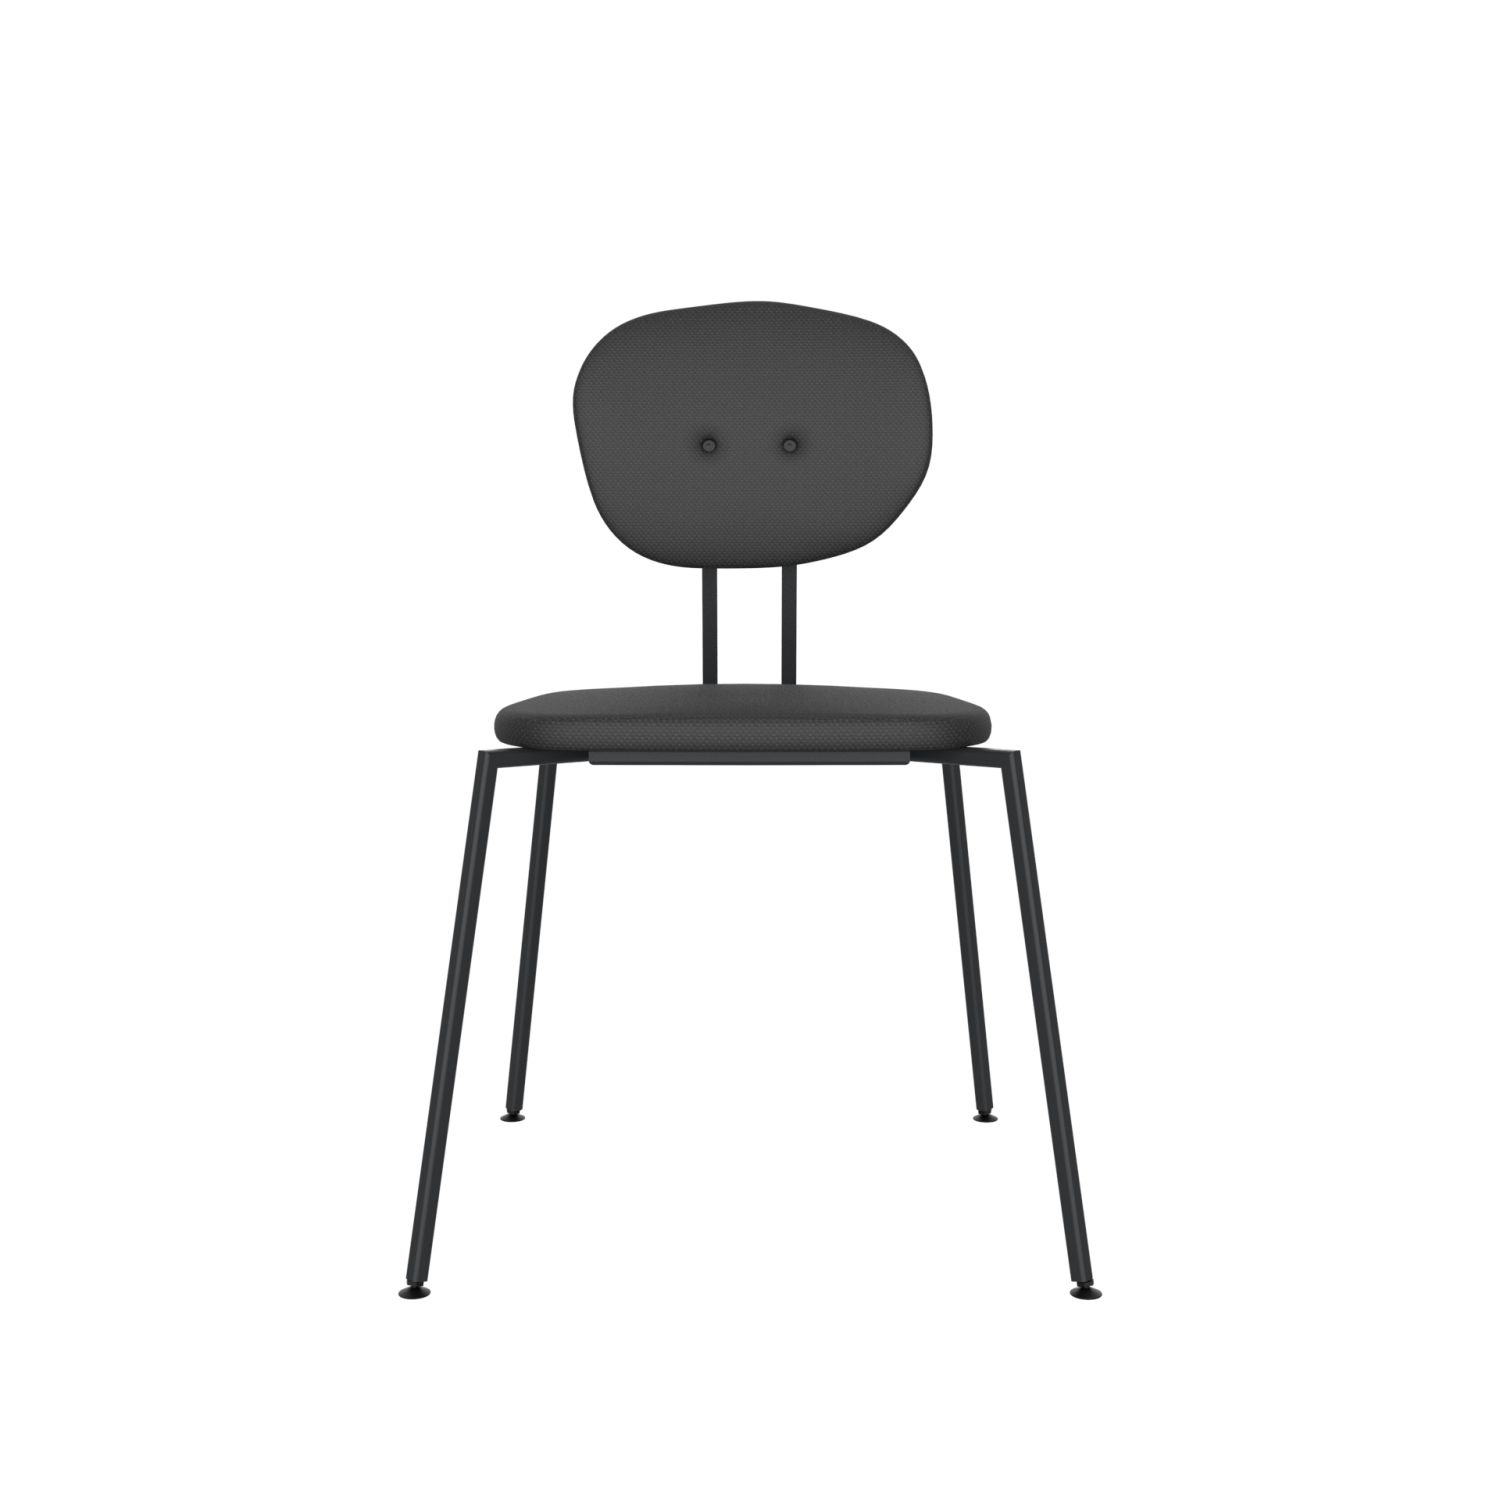 lensvelt maarten baas chair 141 stackable without armrests backrest a havana black 090 black ral9005 hard leg ends